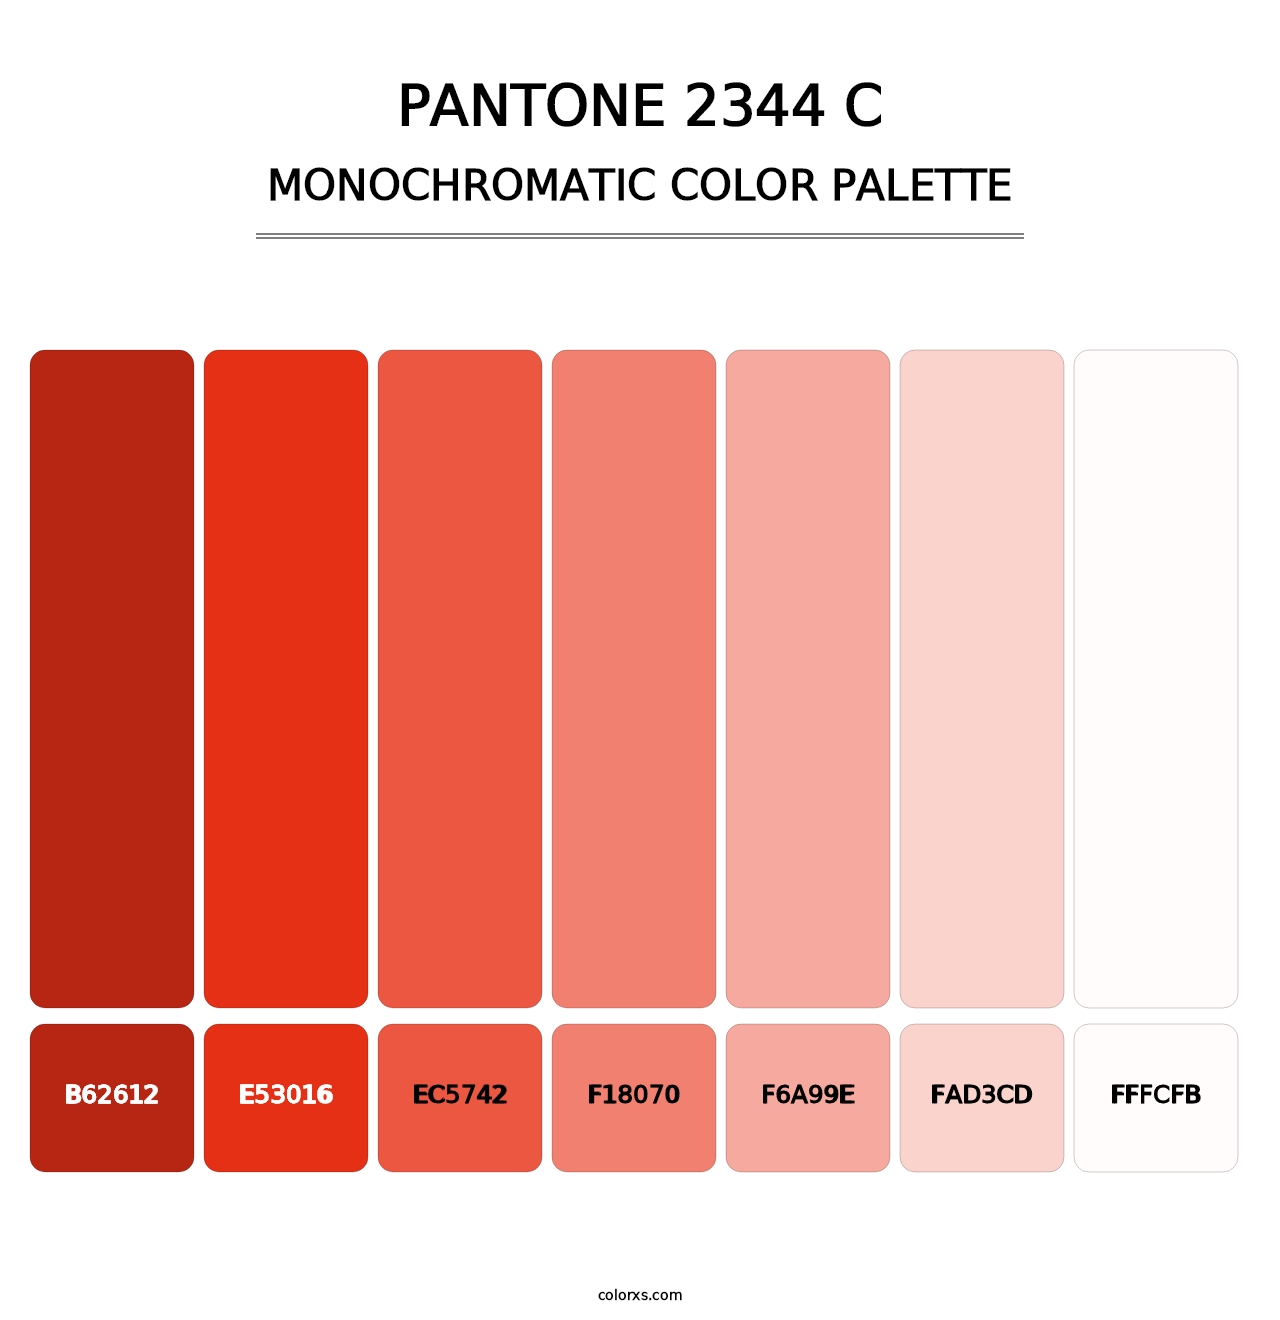 PANTONE 2344 C - Monochromatic Color Palette